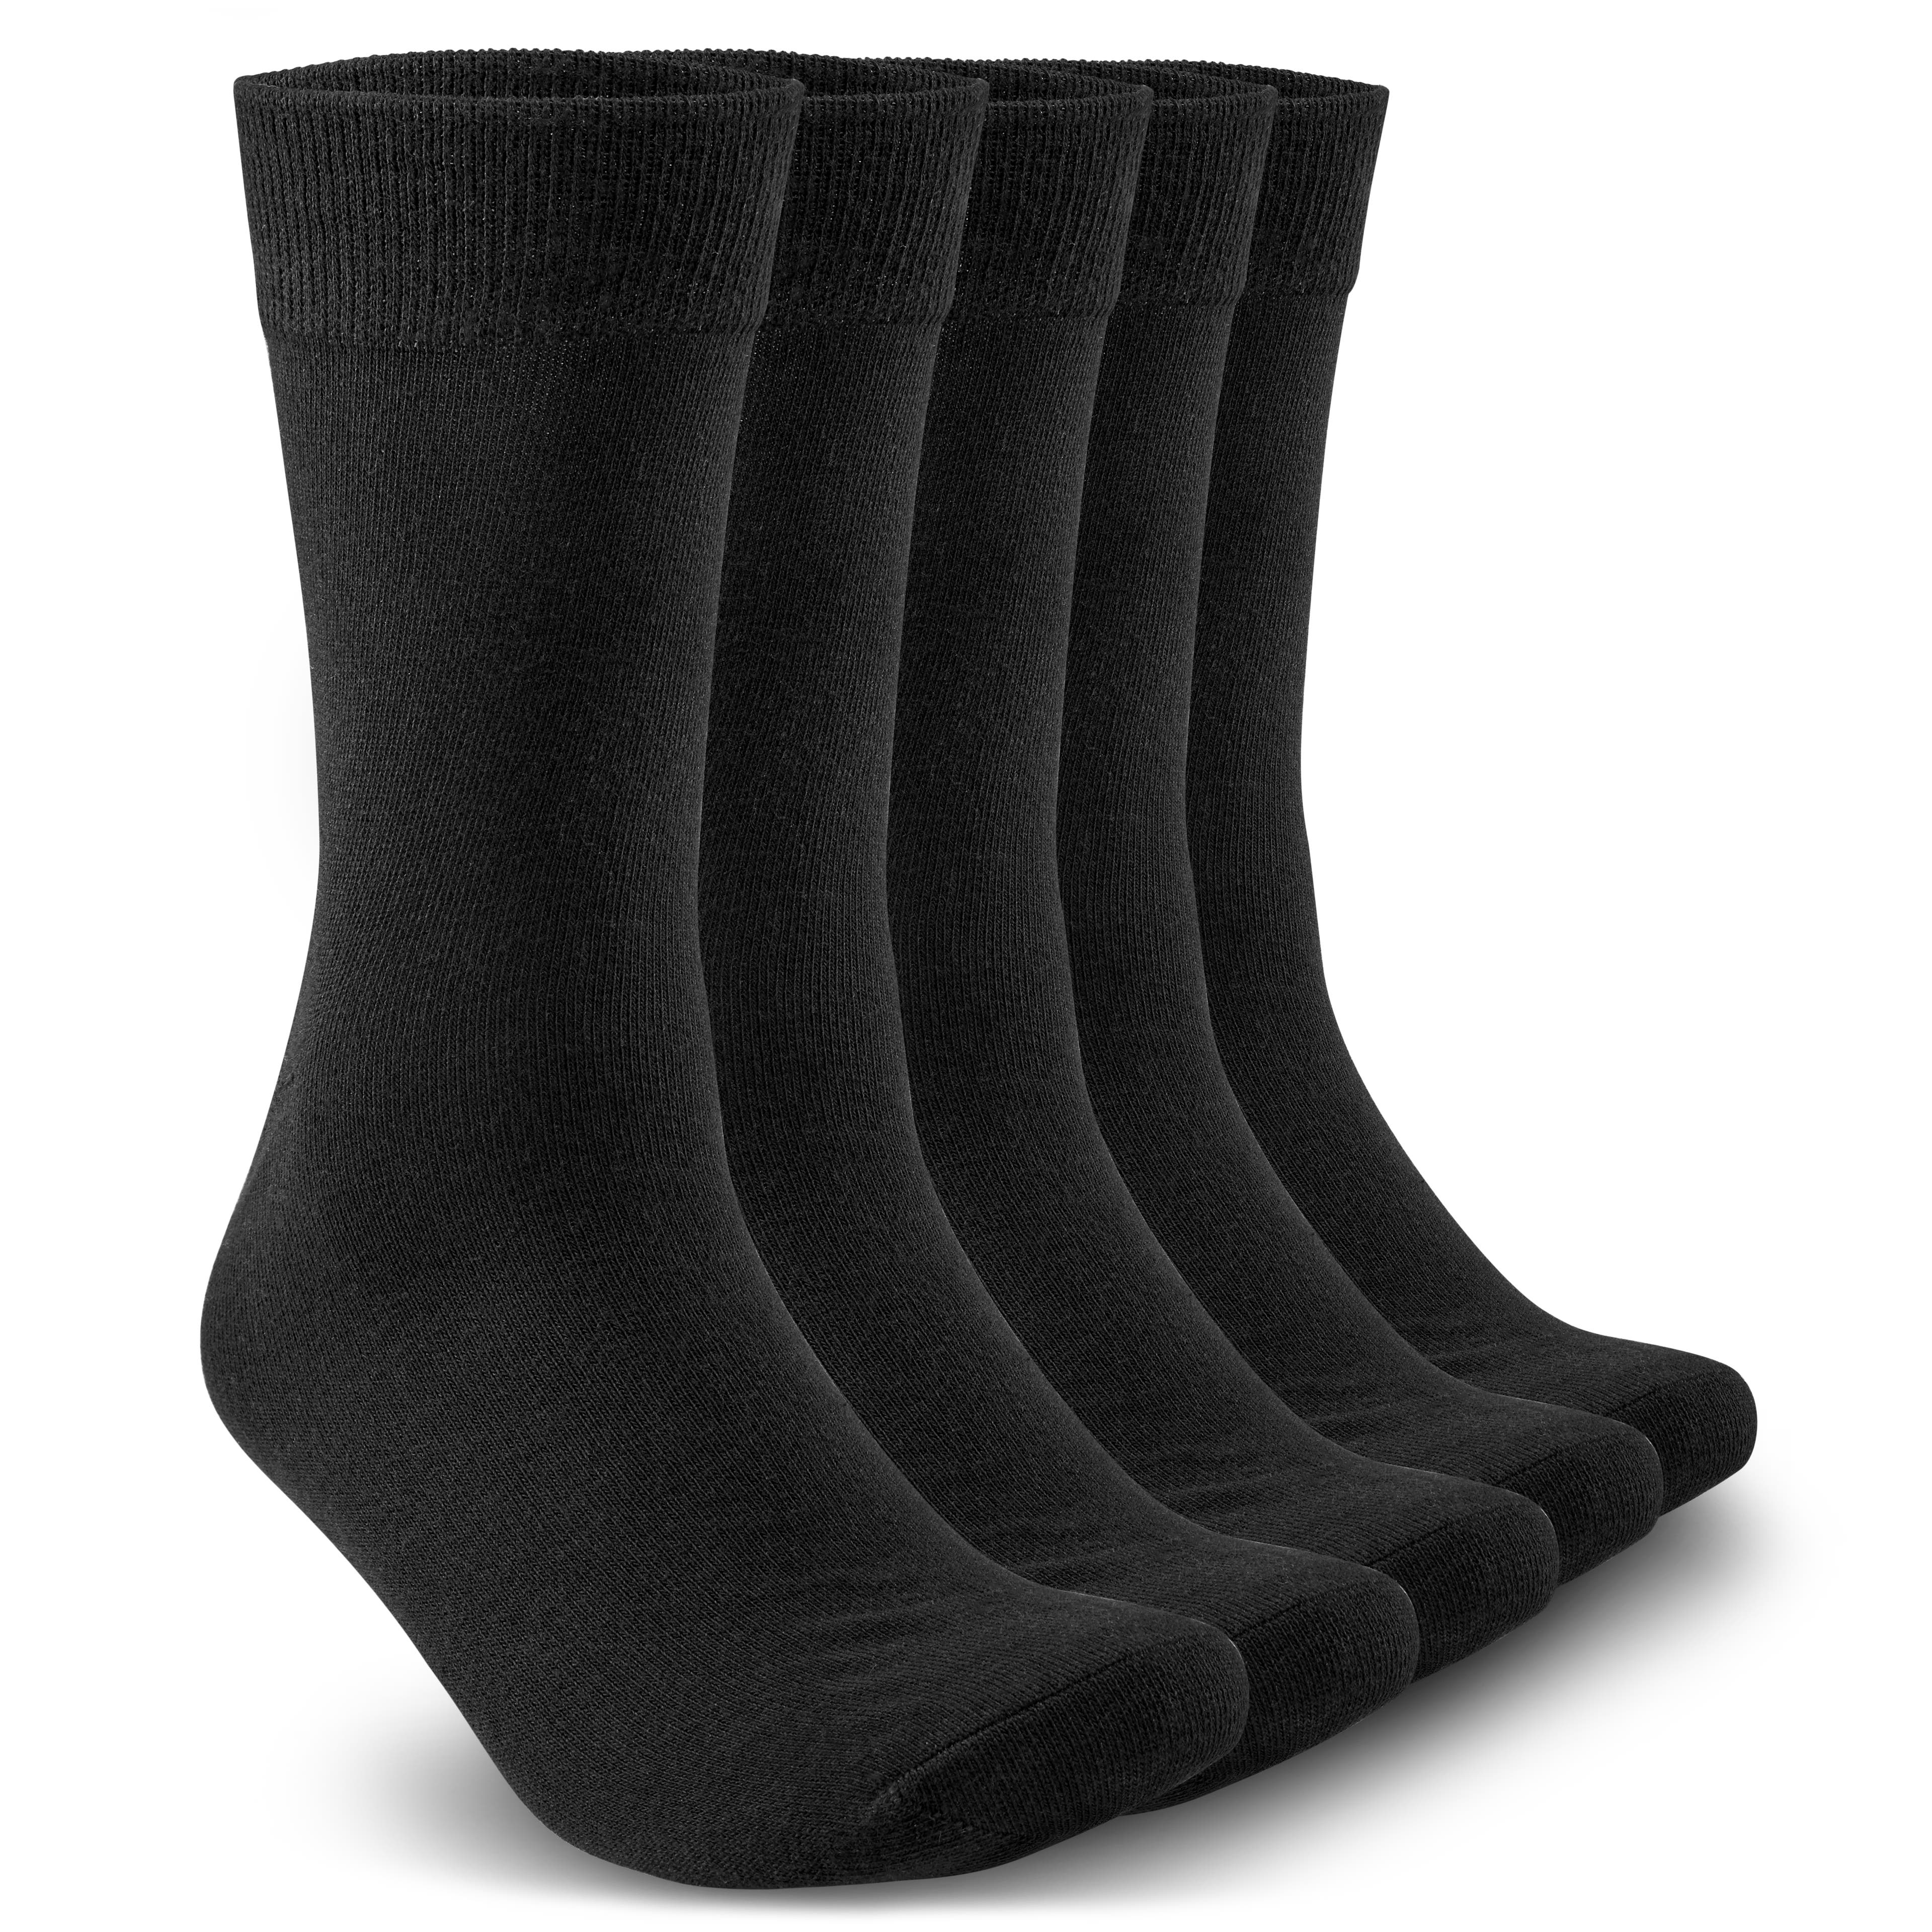 Pack de 5 pares de calcetines negros - Talla 40-45